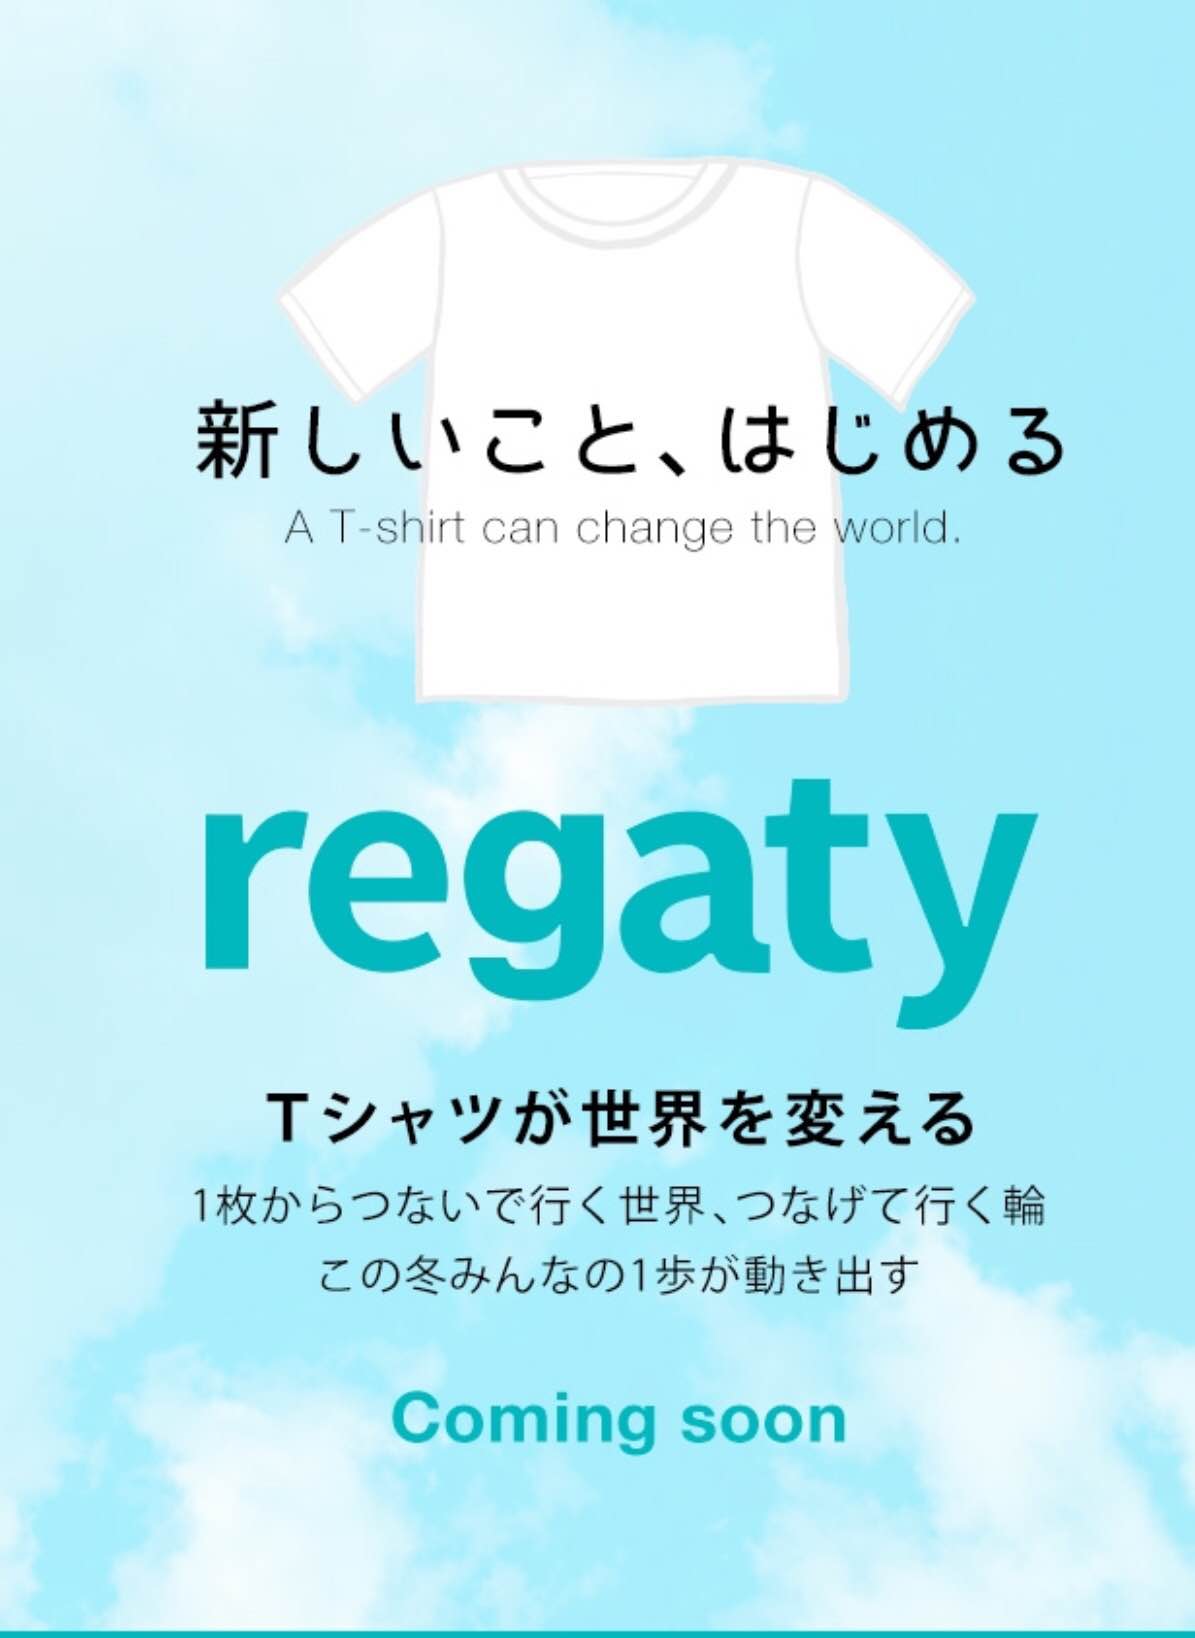 日本発 Tシャツが世界を変える チャリティファッションブランド Regaty 2月17日 いよいよ販売開始 Regatyのプレスリリース